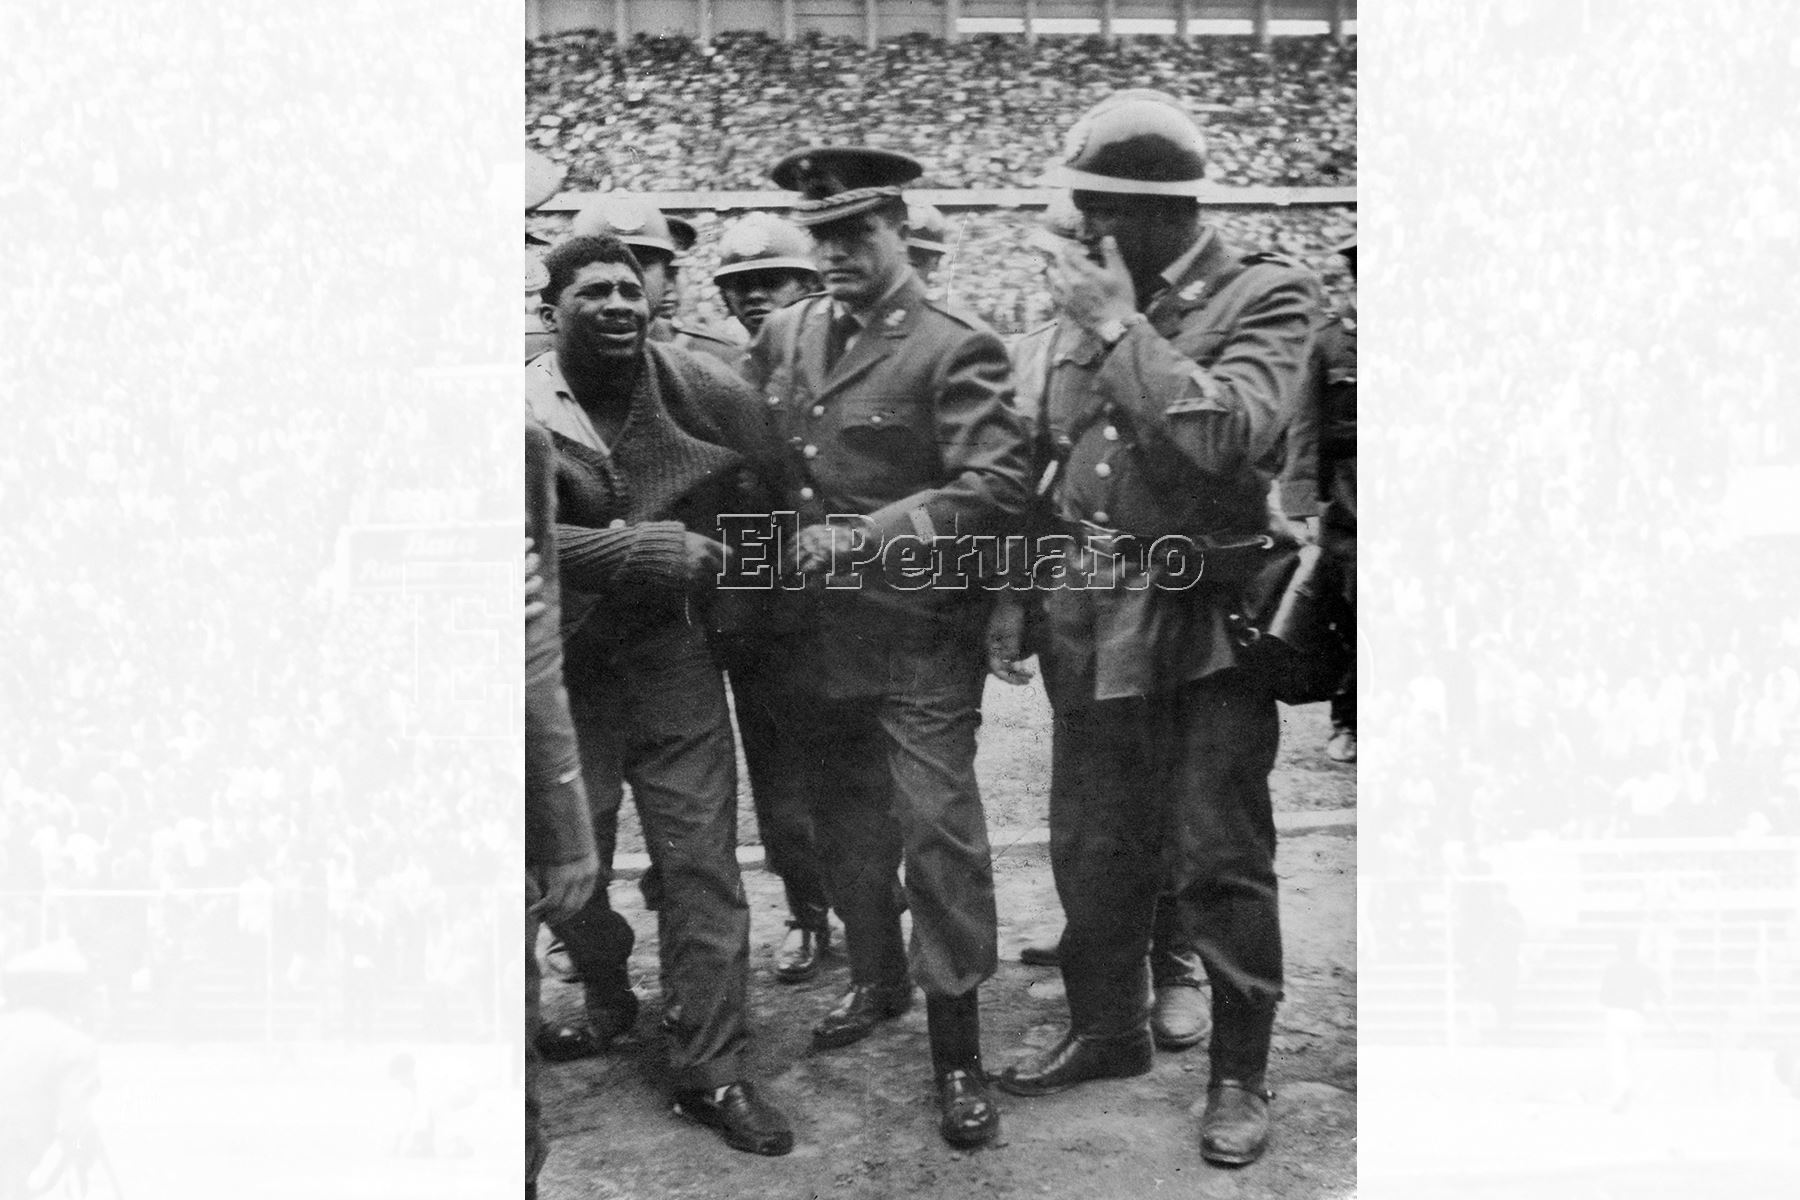 Lima - 24 may 1964 / El hincha apodado "Negro Bomba" sindicado como el que ocasionó la tragedia del Estadio Nacional en mayo 1964 al ingresar al campo a agredir al arbitro uruguayo Pazos luego de que éste anulara un gol peruano.